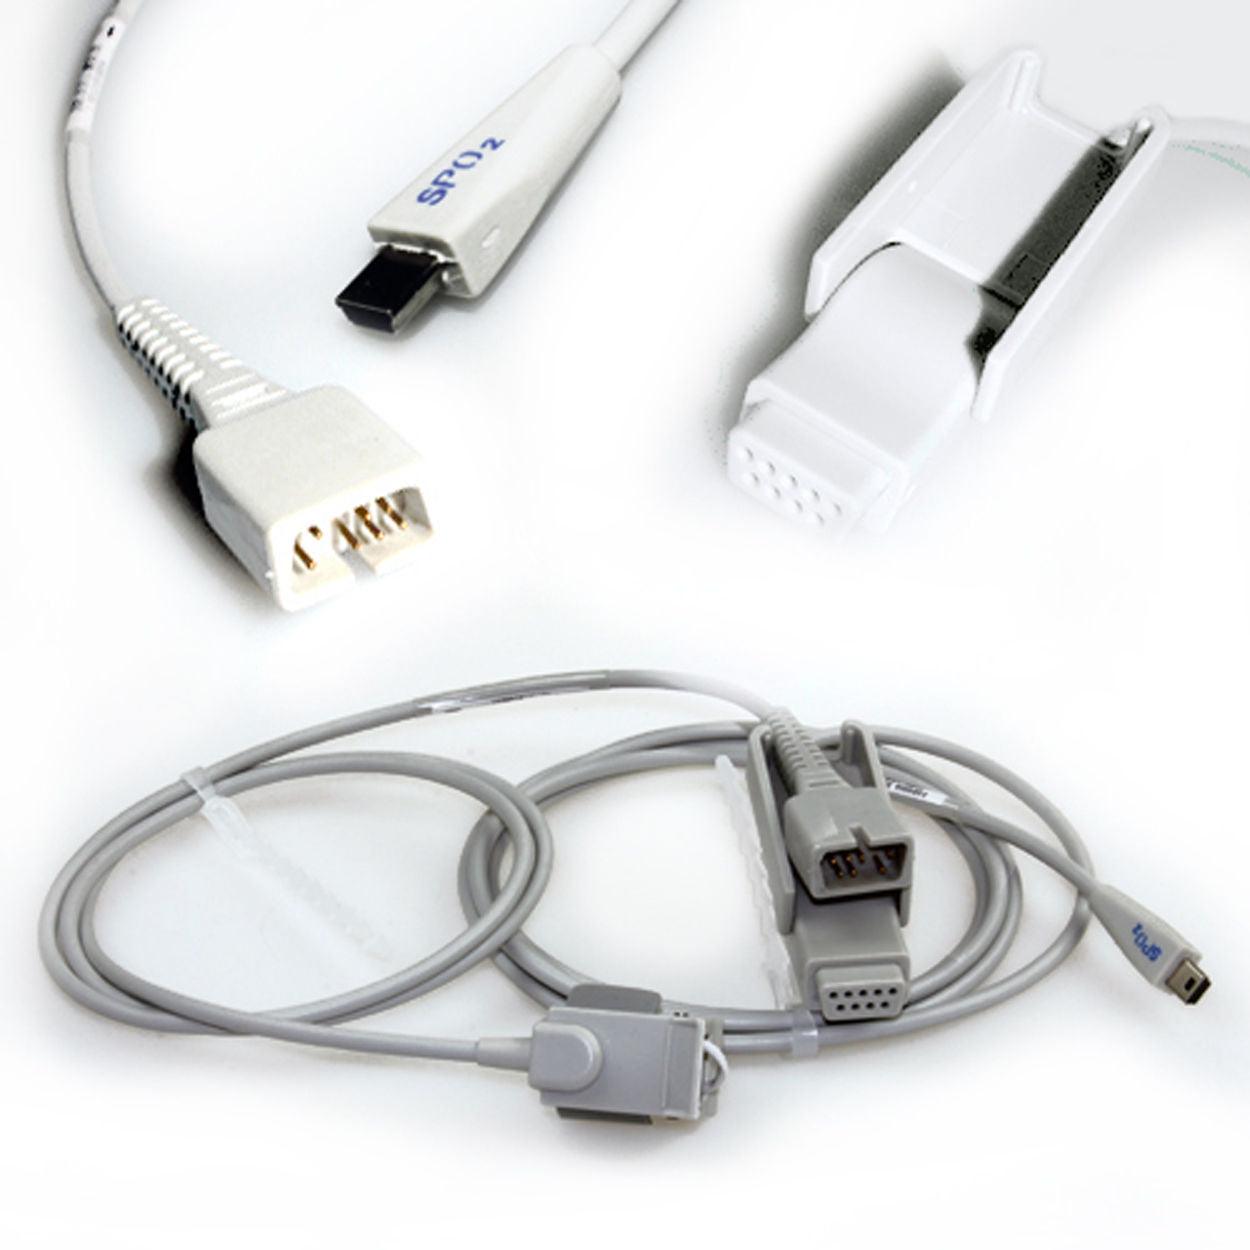 SPO2 Sensor probe For CONTEC08A/08C Blood pressure Monitor,Adult,Child,Neonatal size